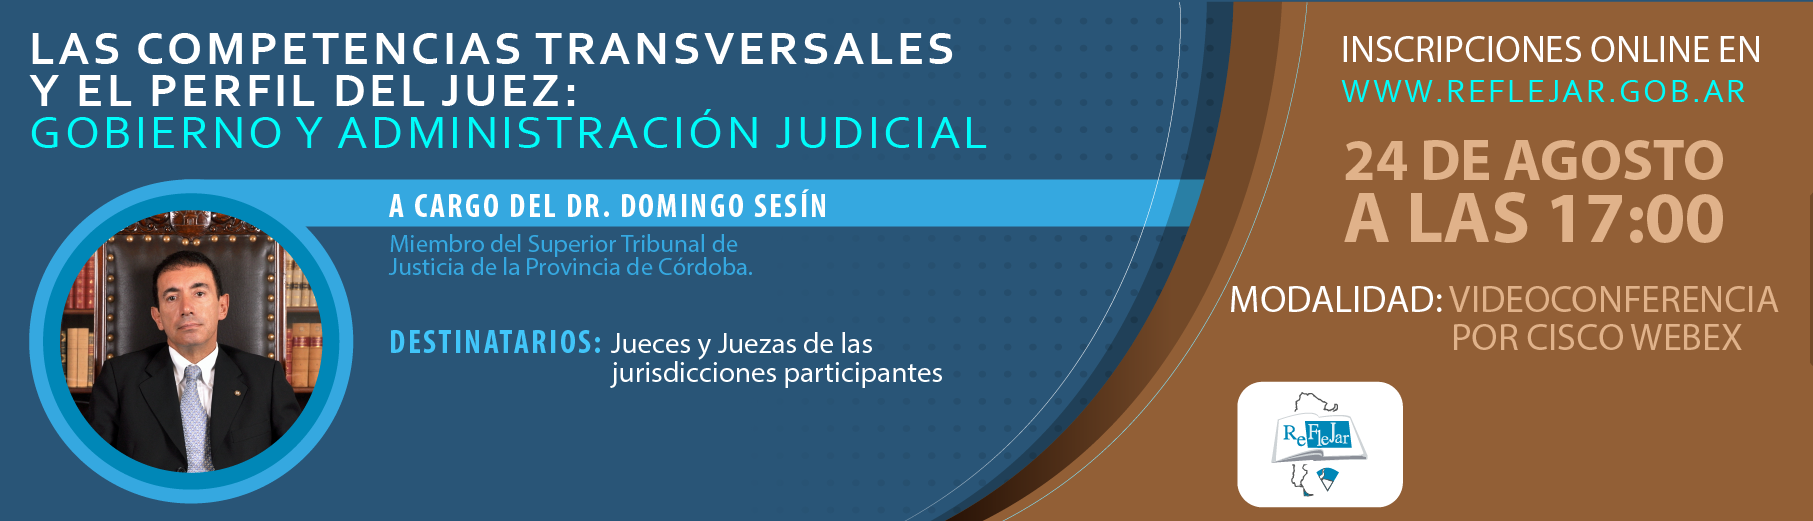 Las_competencias_transversales_y_el_perfil_del_juez-01